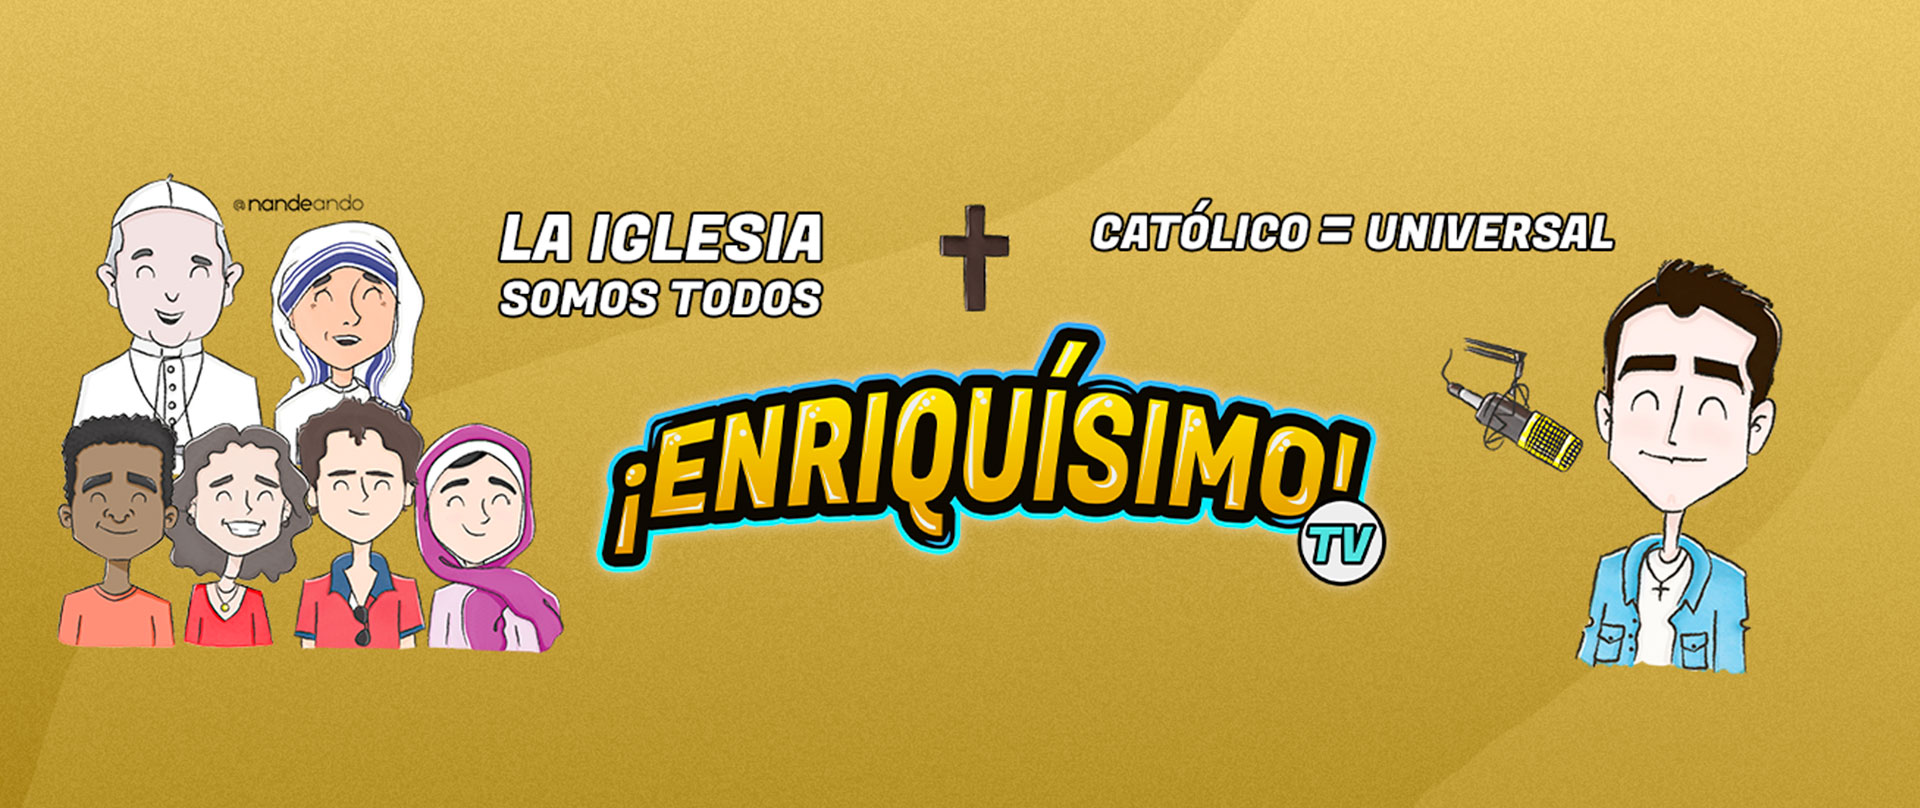 Enriquísimo Tv canal católico de YouTube y Tik Tok. Enrique Vidal Flores